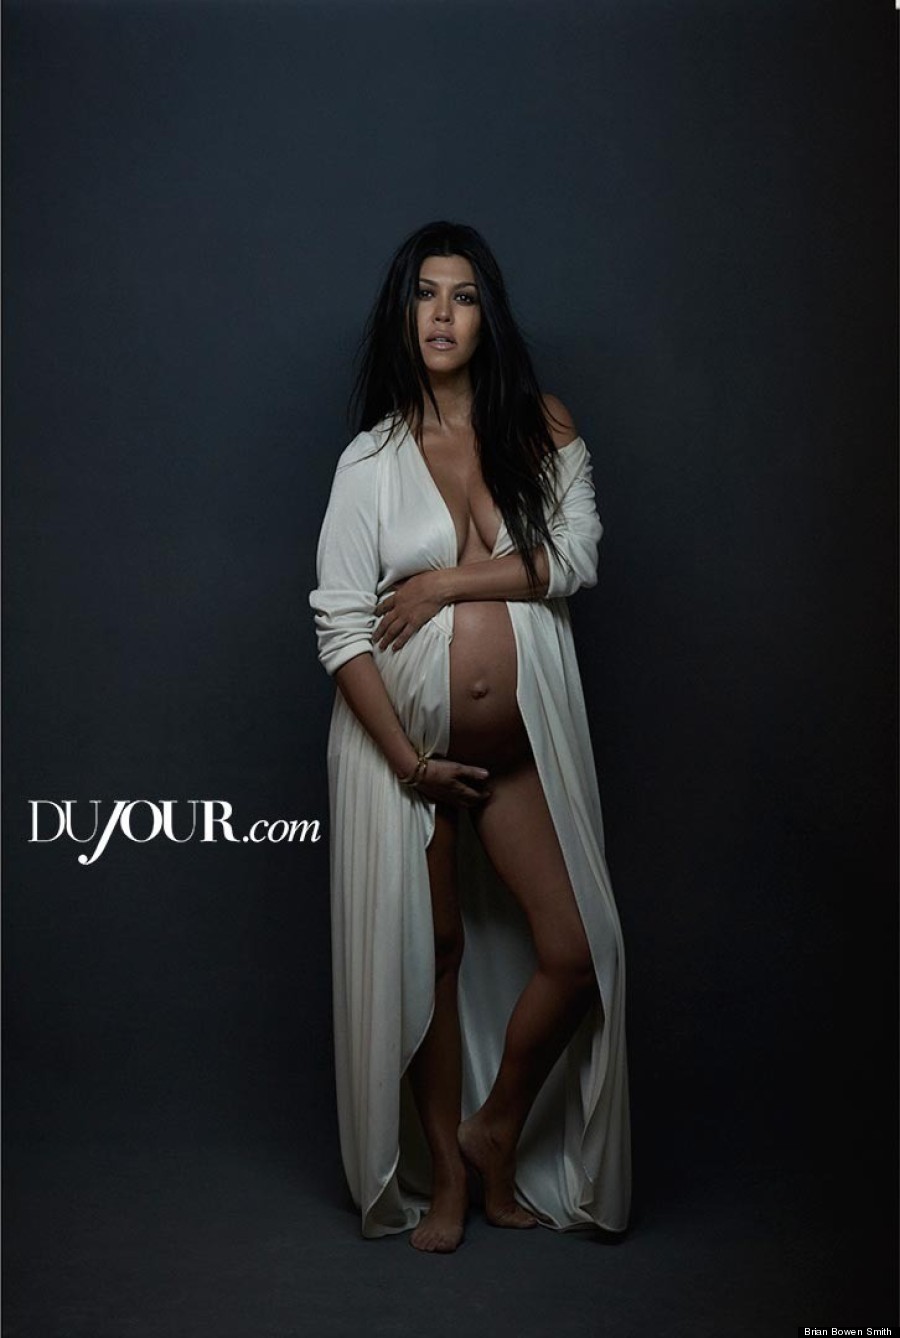 Kourtney Kardashian Porn - Pregnant Kourtney Kardashian Poses Nude For DuJour Magazine | HuffPost  Entertainment